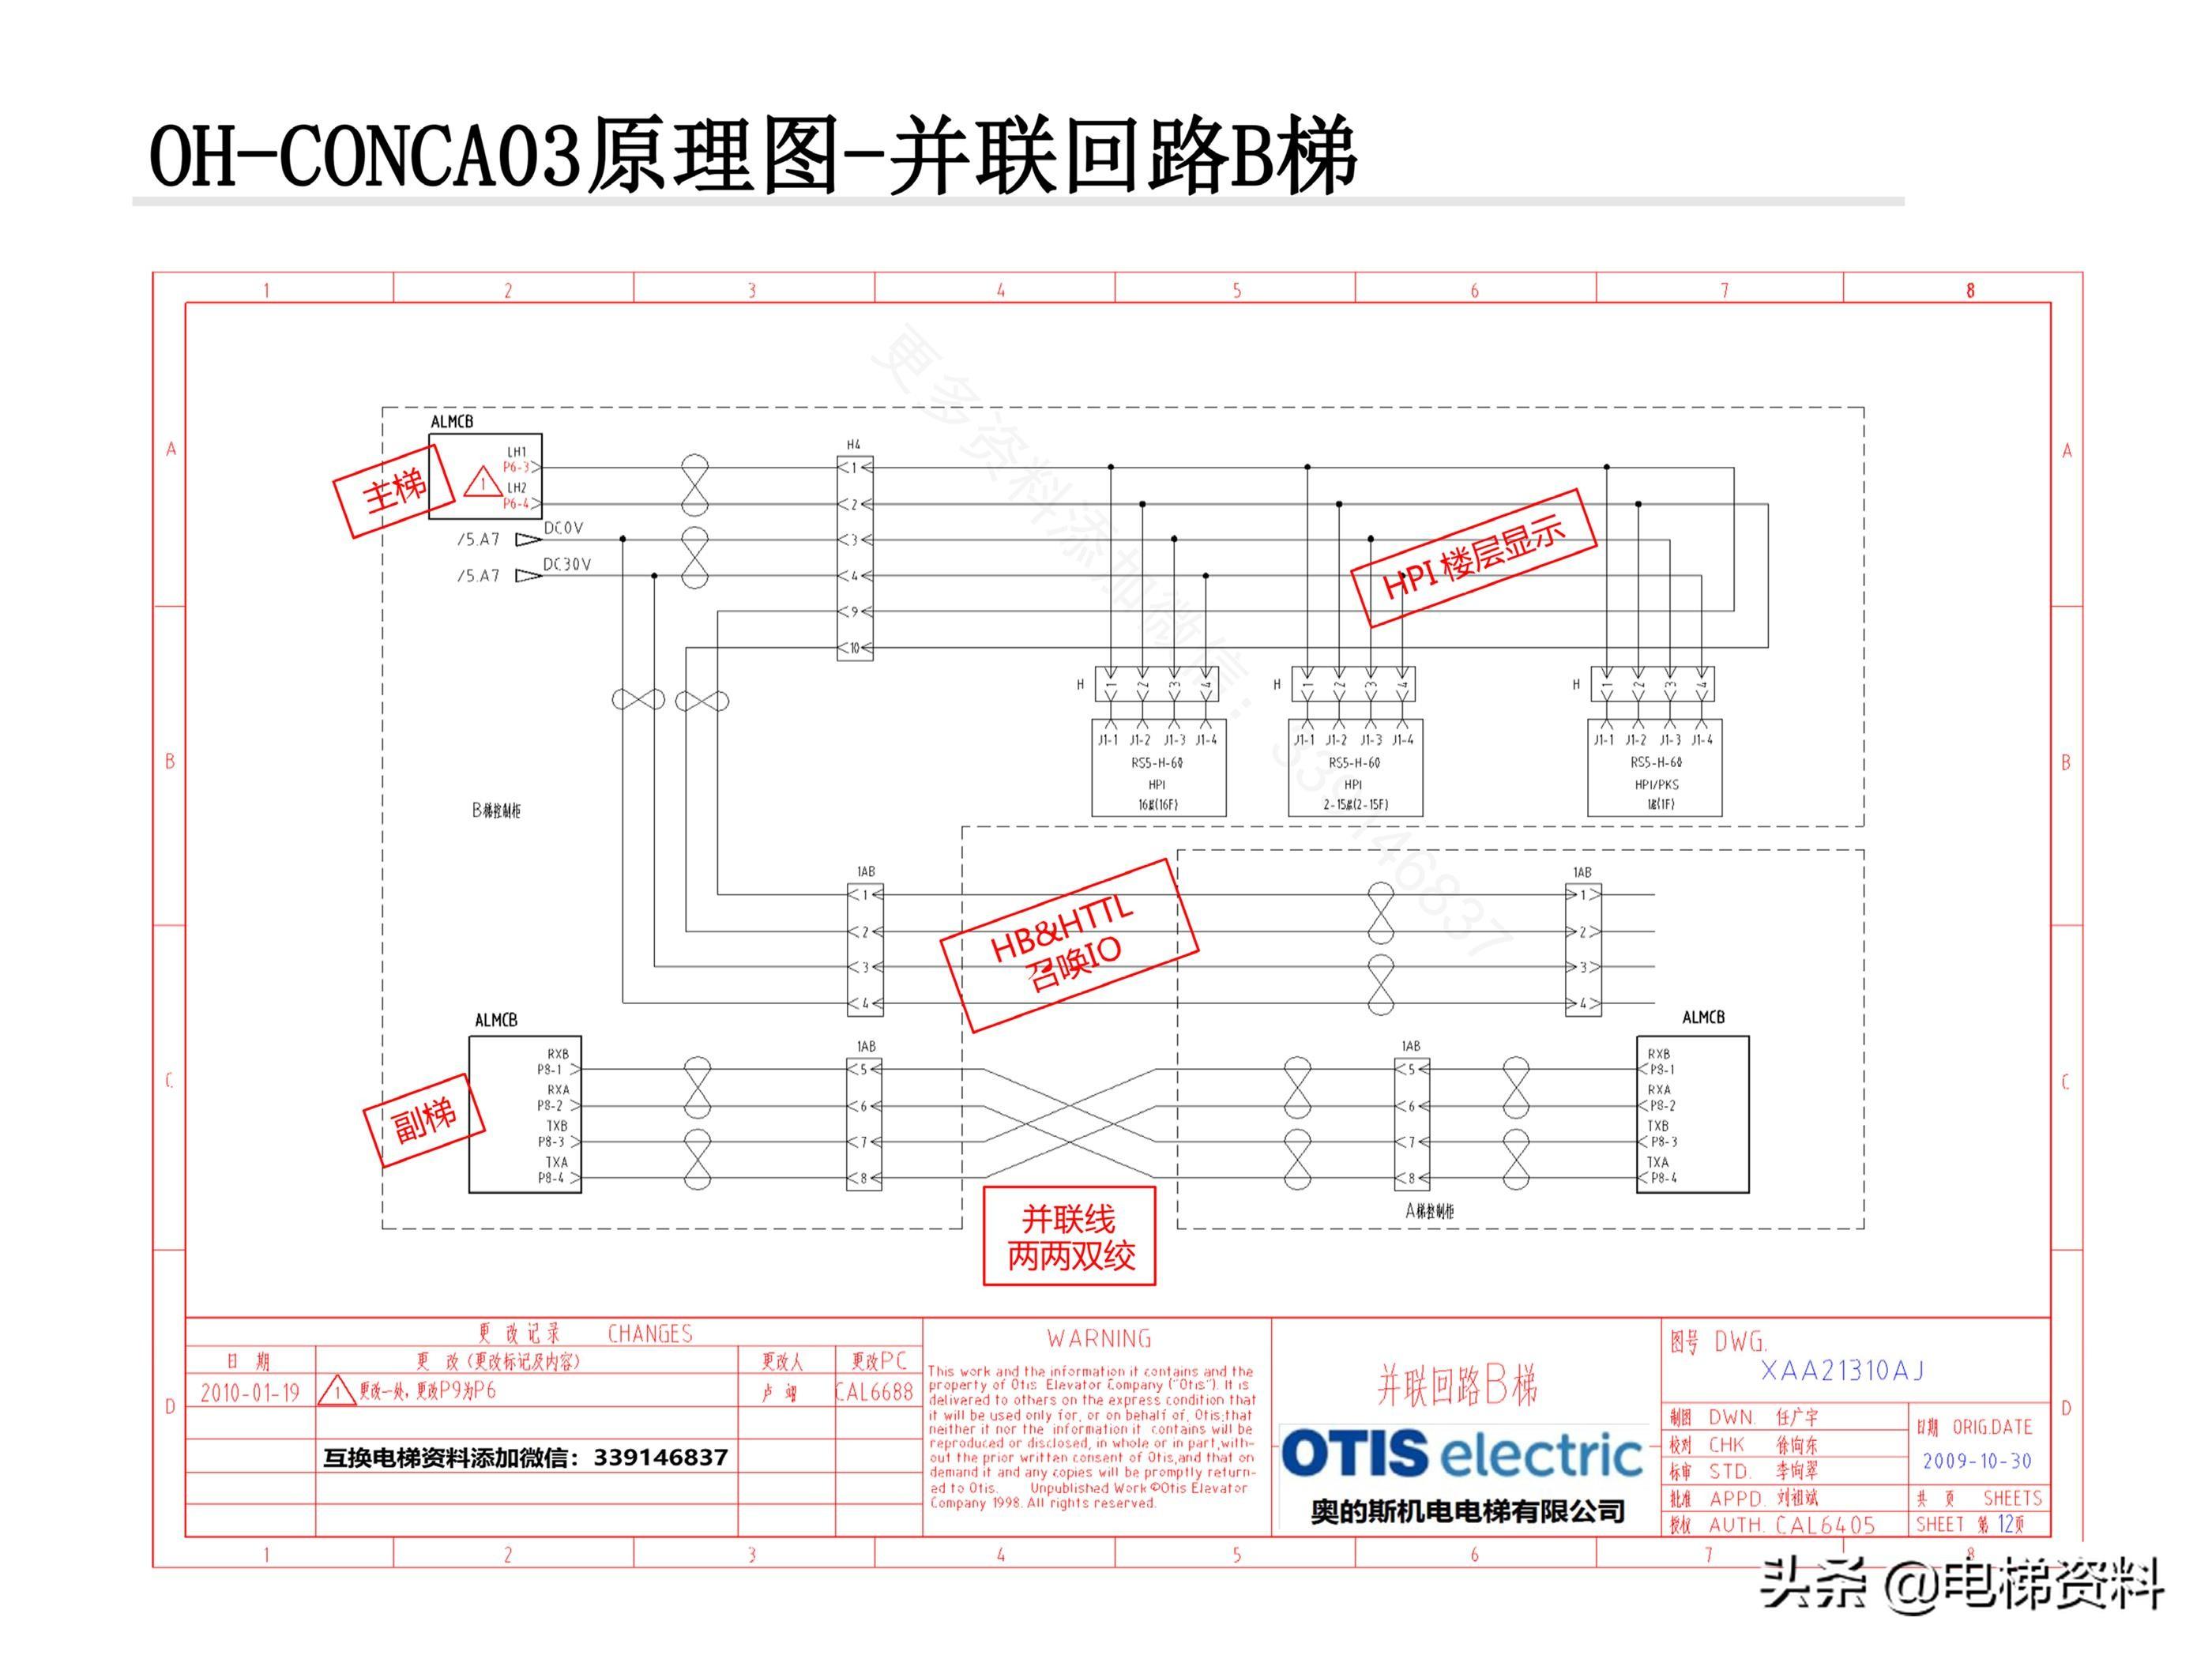 奥的斯电梯OH-CONCA03原理图讲解-XAA21310AJ